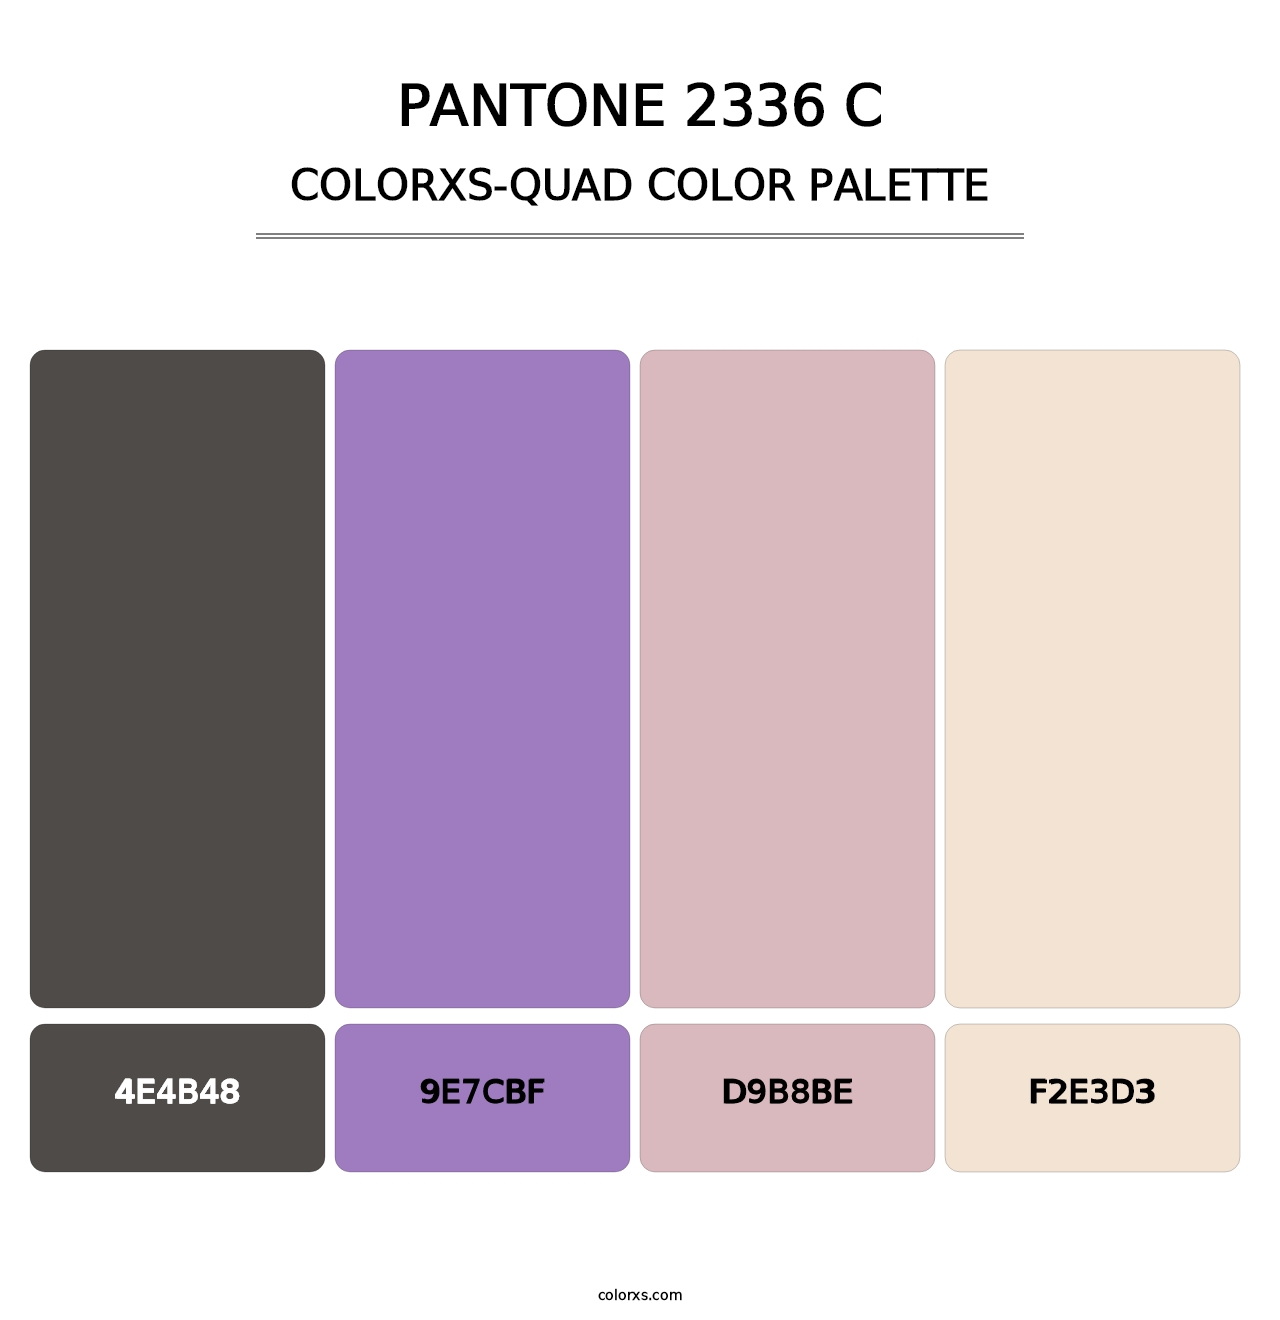 PANTONE 2336 C - Colorxs Quad Palette